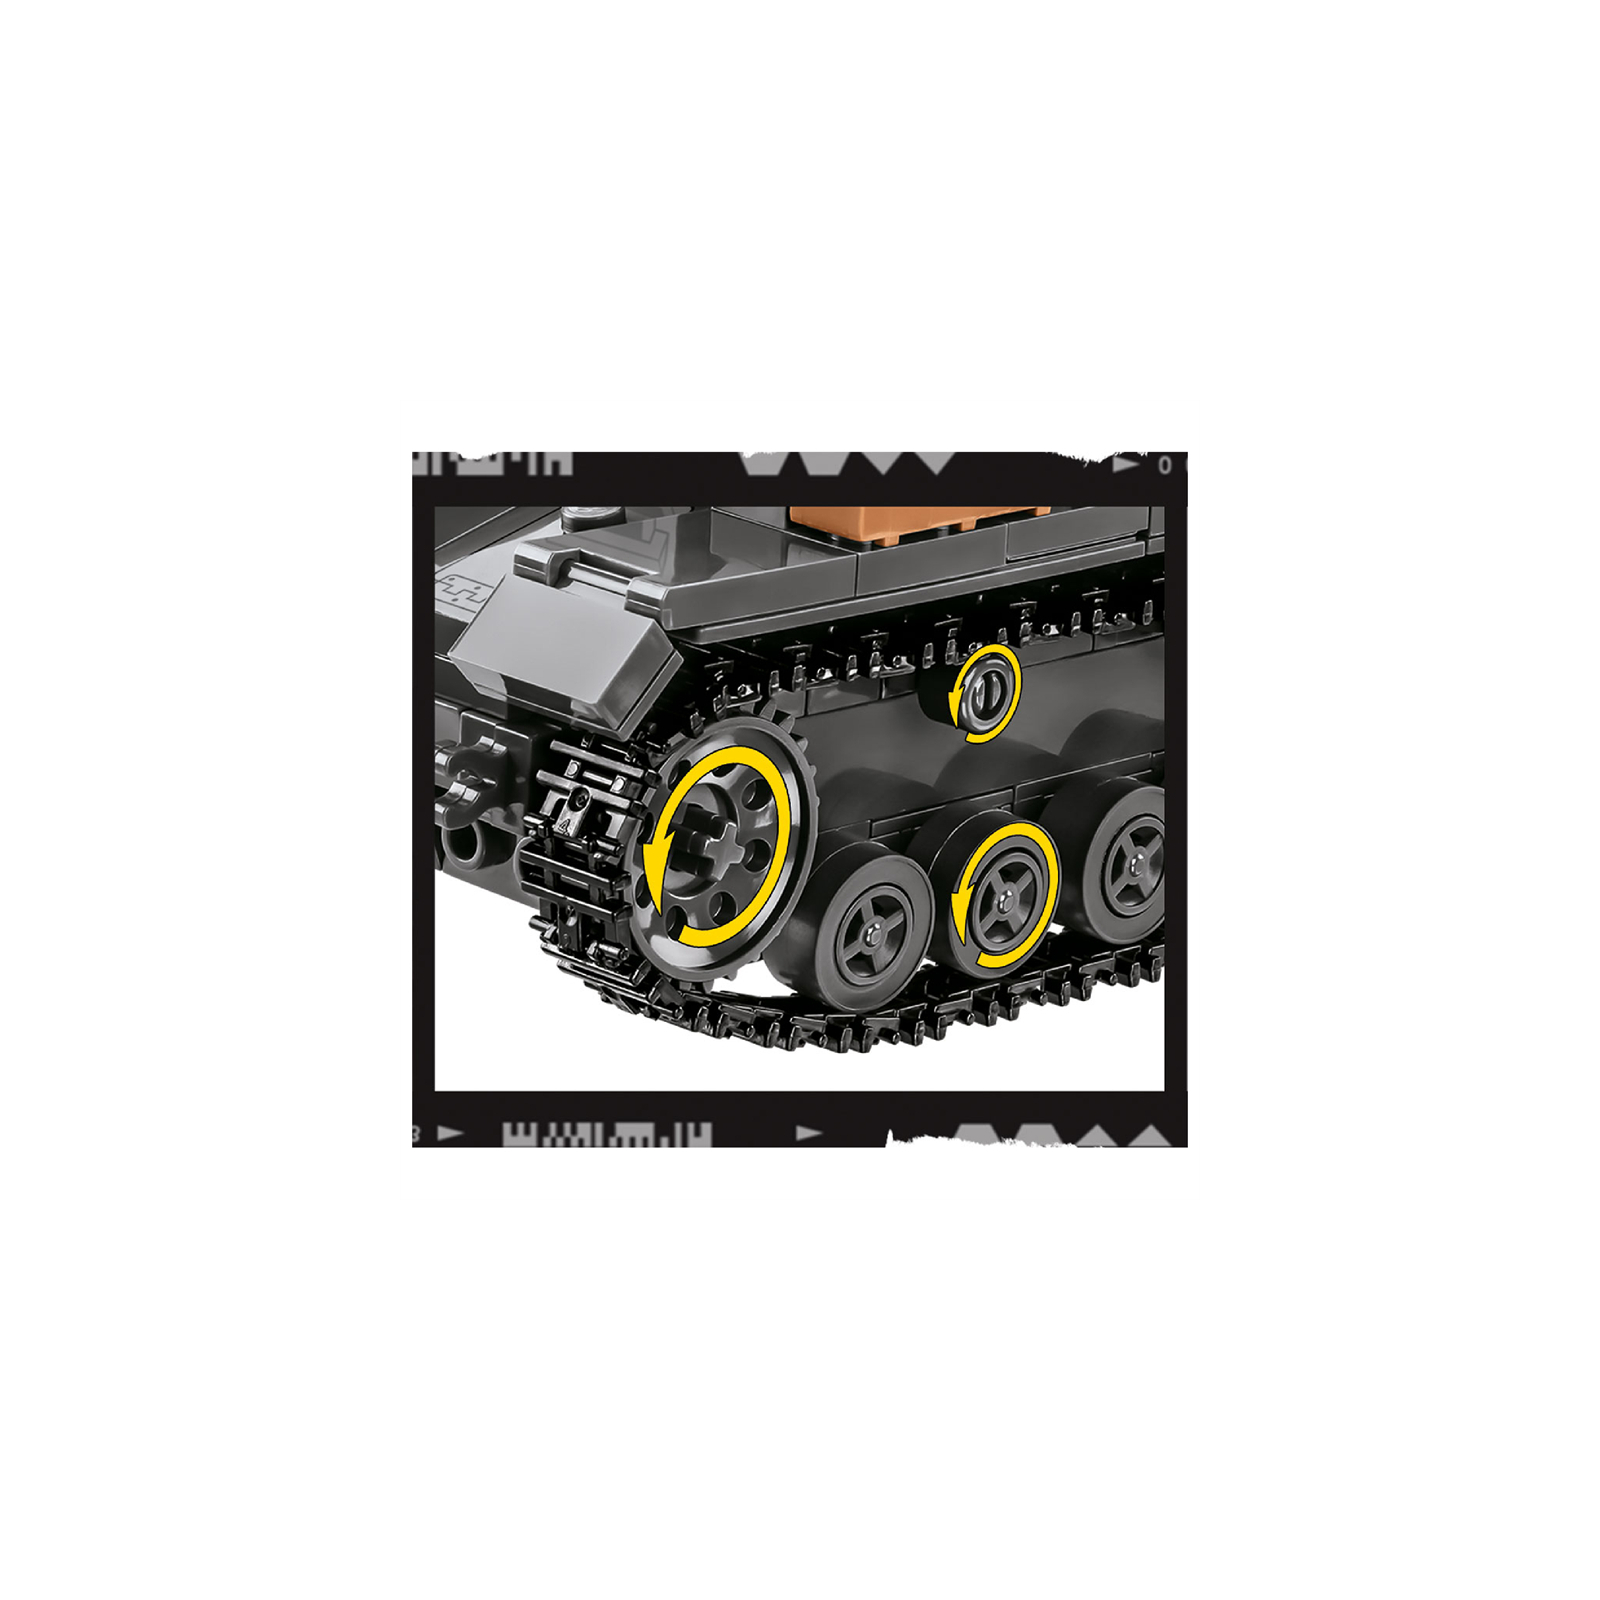 Конструктор Cobi Company of Heroes 3 Танк Panzer IV, 610 деталей (COBI-3045) зображення 5